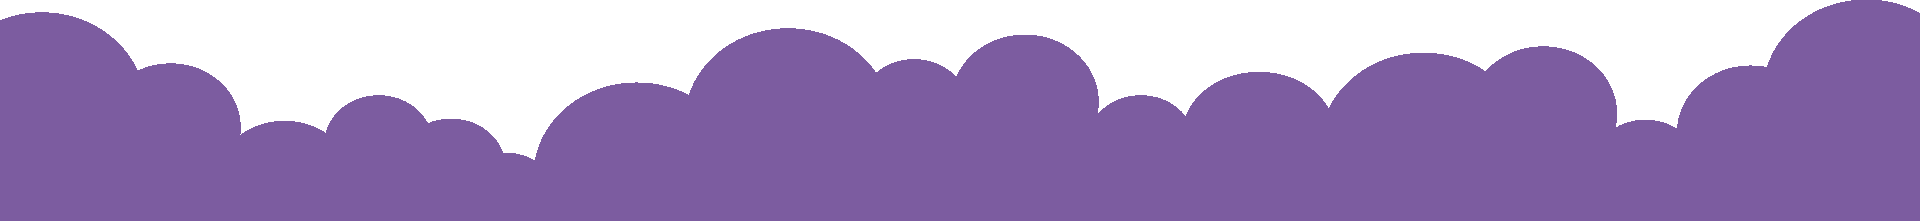 Una silhouette viola e bianca di una catena montuosa su sfondo bianco.